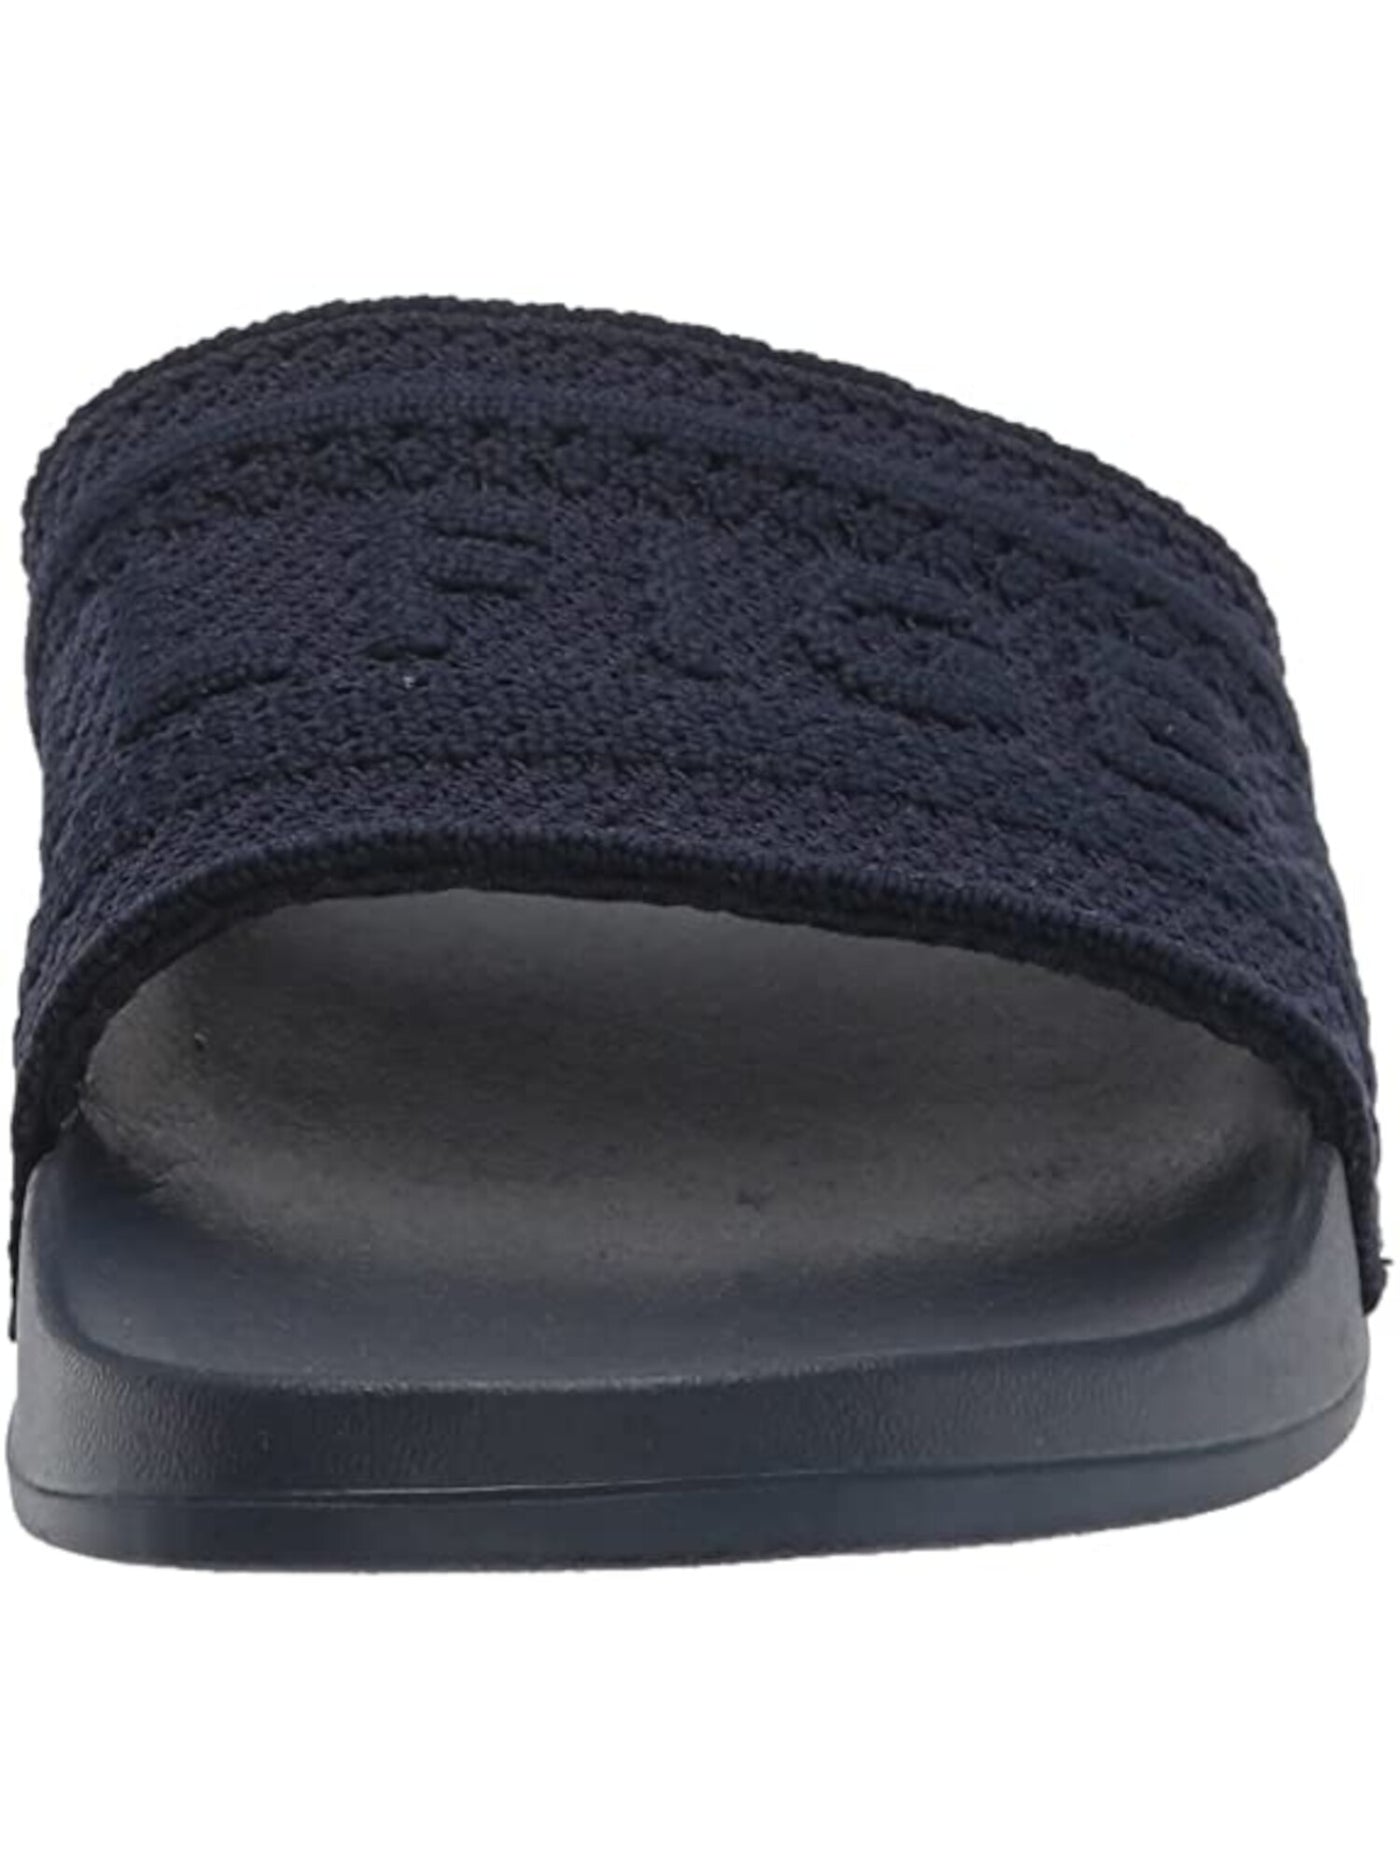 TOMMY HILFIGER Womens Navy Knit Logo Pool Slides Dollop Round Toe Slip On Slide Sandals 9 M